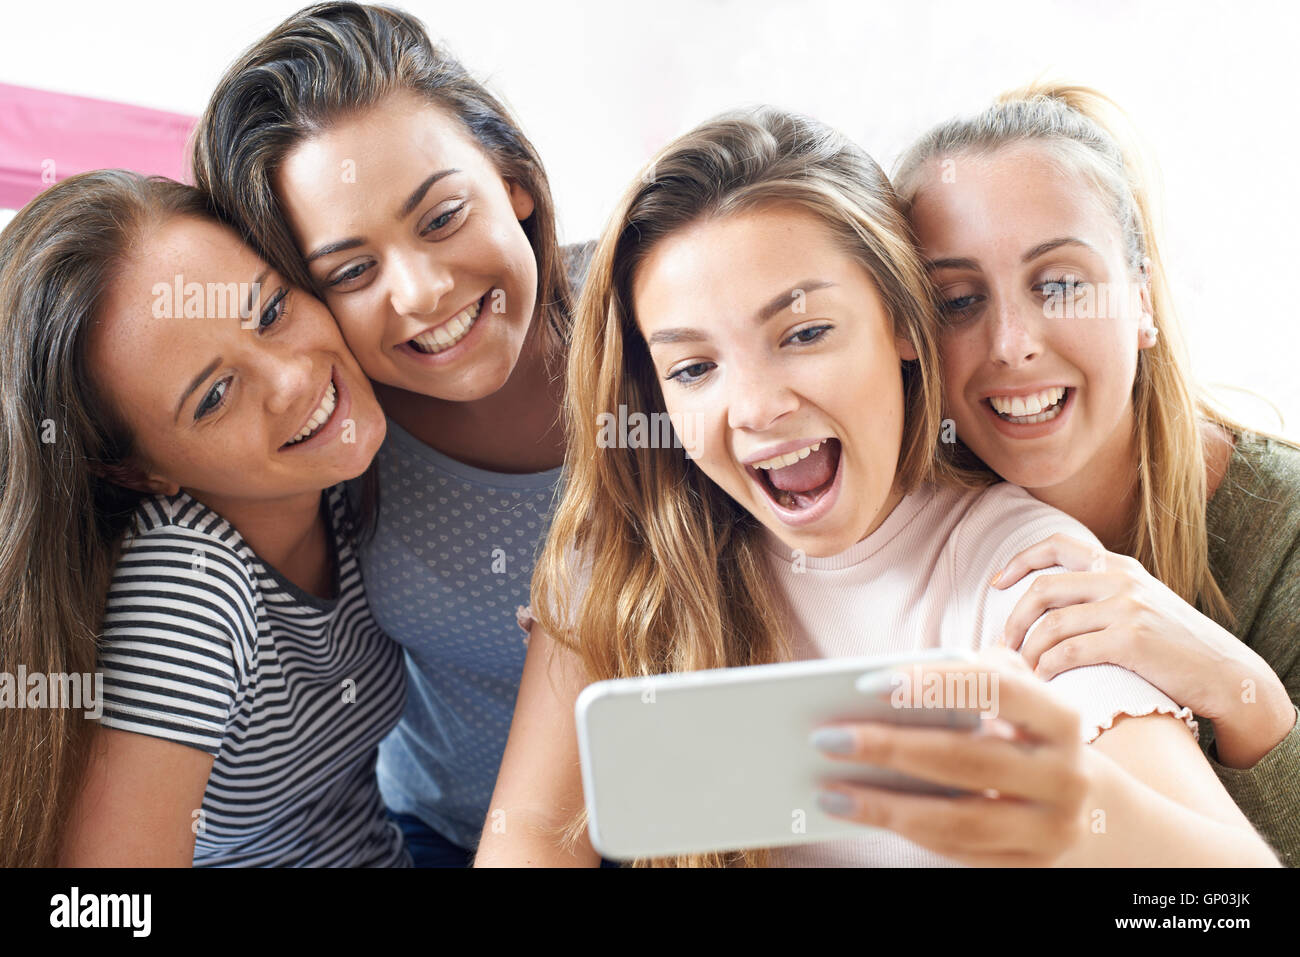 Gruppe von Mädchen im Teenageralter unter Selfie auf Handy Stockfoto